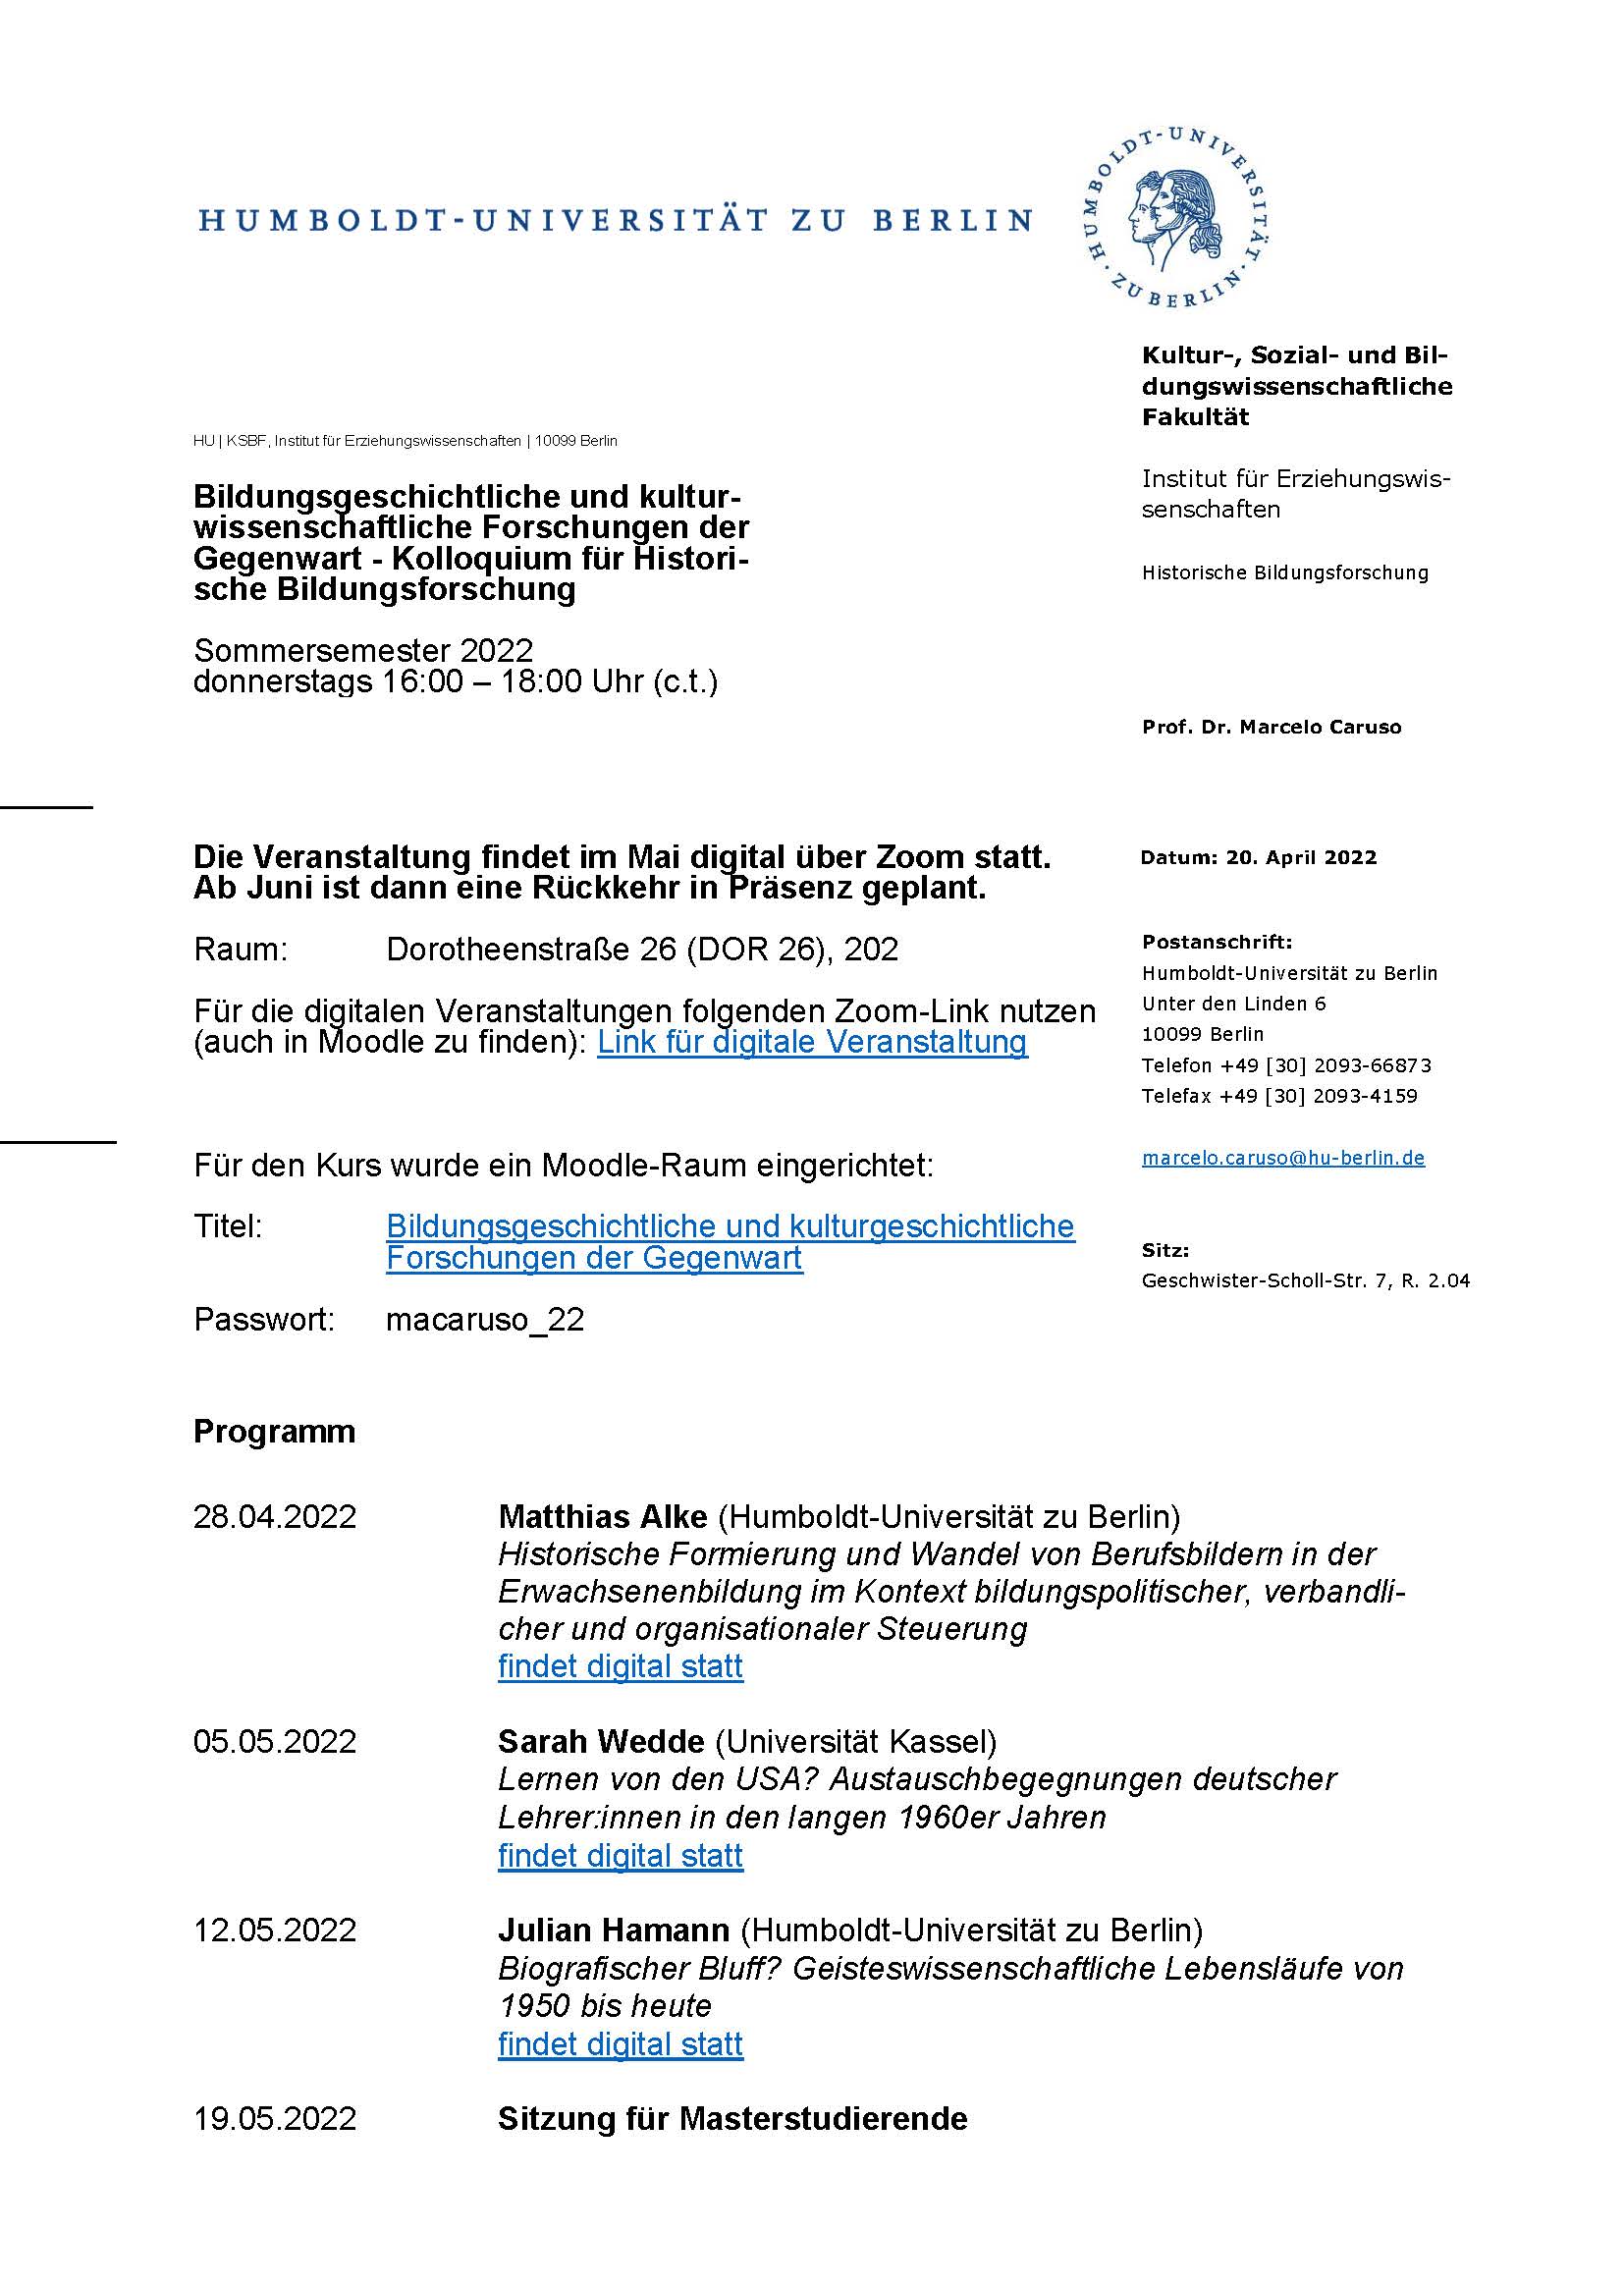 HU Hist. Bildungsforschung Kolloquium SoSe 2022_final_Seite_1.jpg